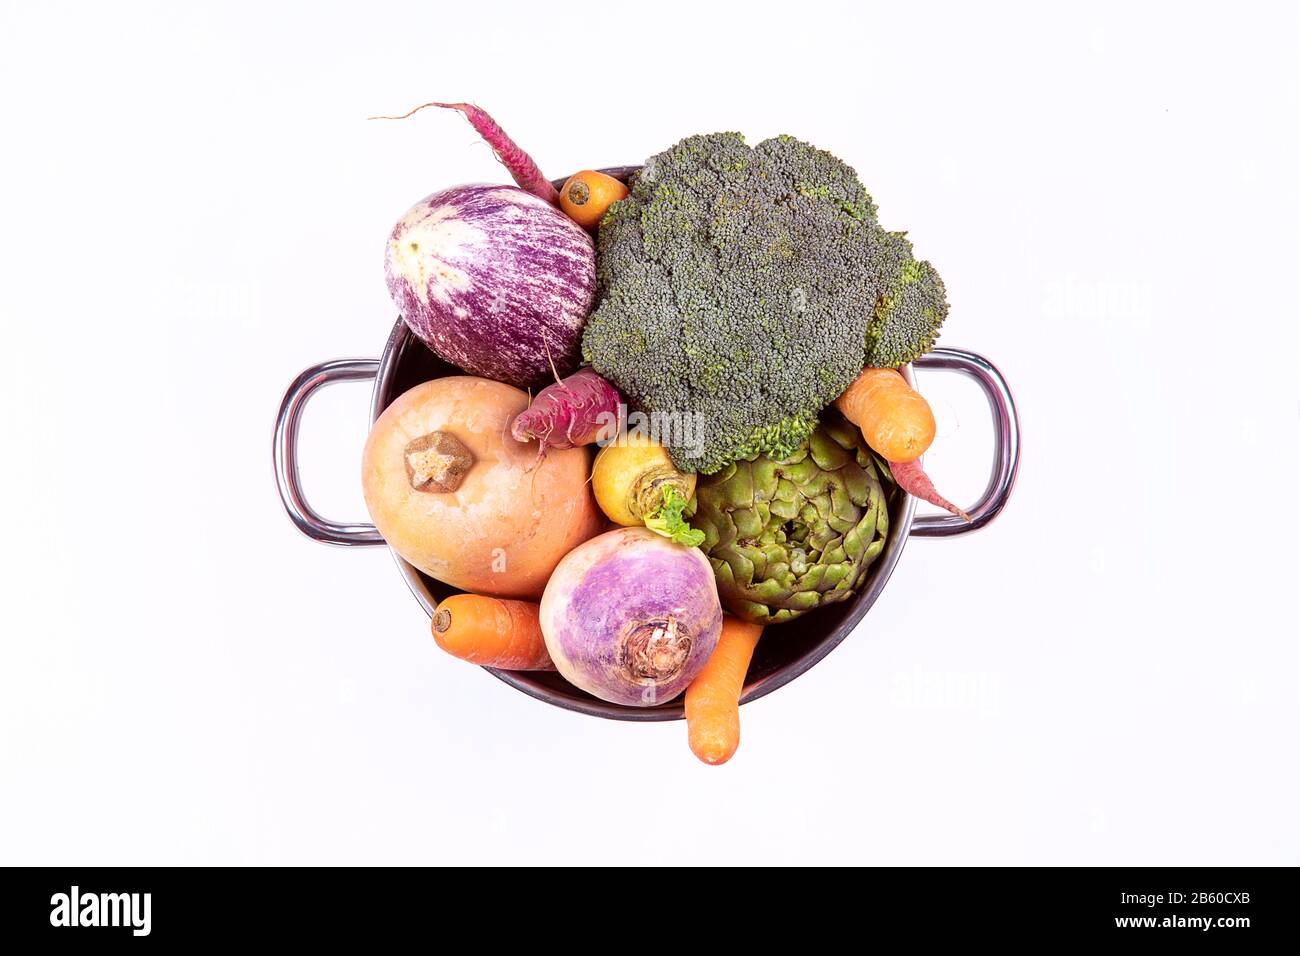 Arragment de légumes frais colorés à l'intérieur d'une casserole en acier sur fond blanc, plat. Concept de mode de vie sain Banque D'Images